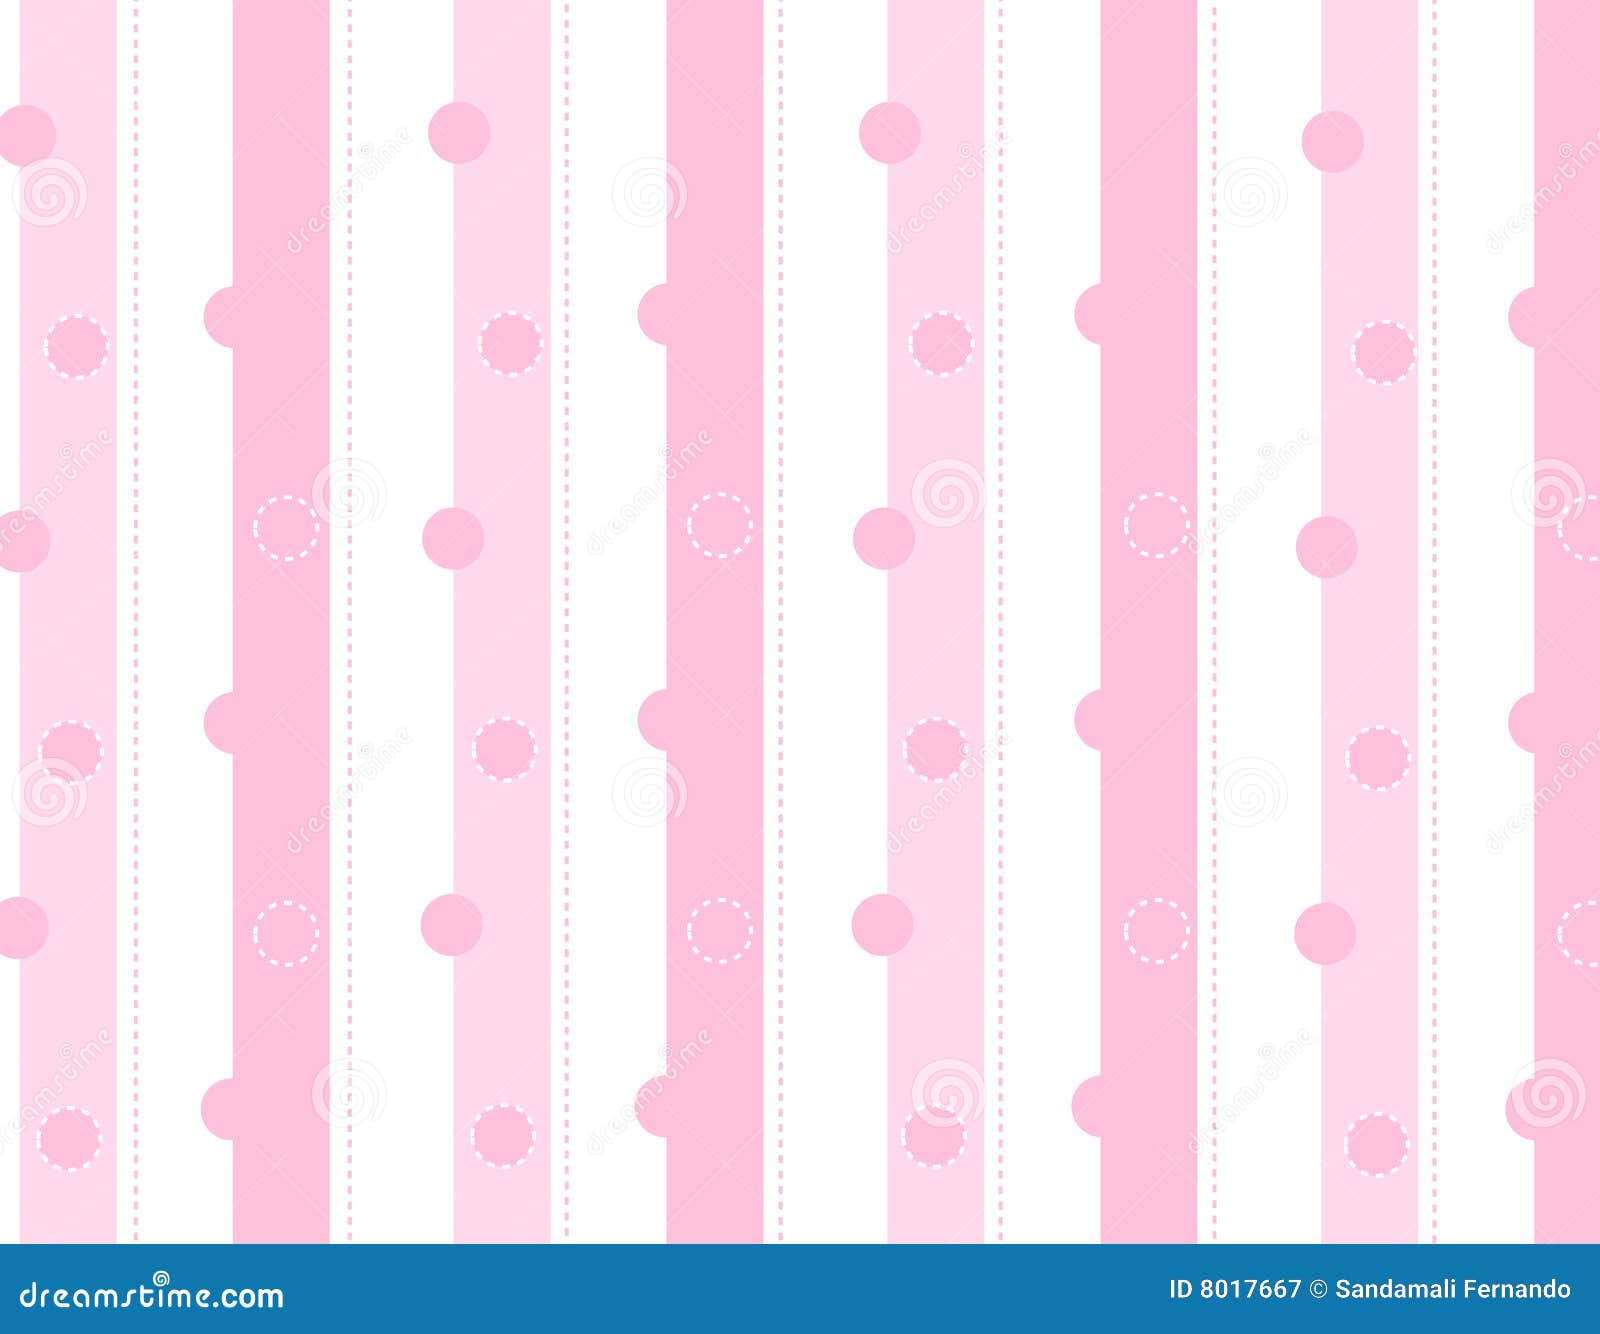 Pink Stripe Background Stock Illustrations – 66,412 Pink Stripe Background  Stock Illustrations, Vectors & Clipart - Dreamstime